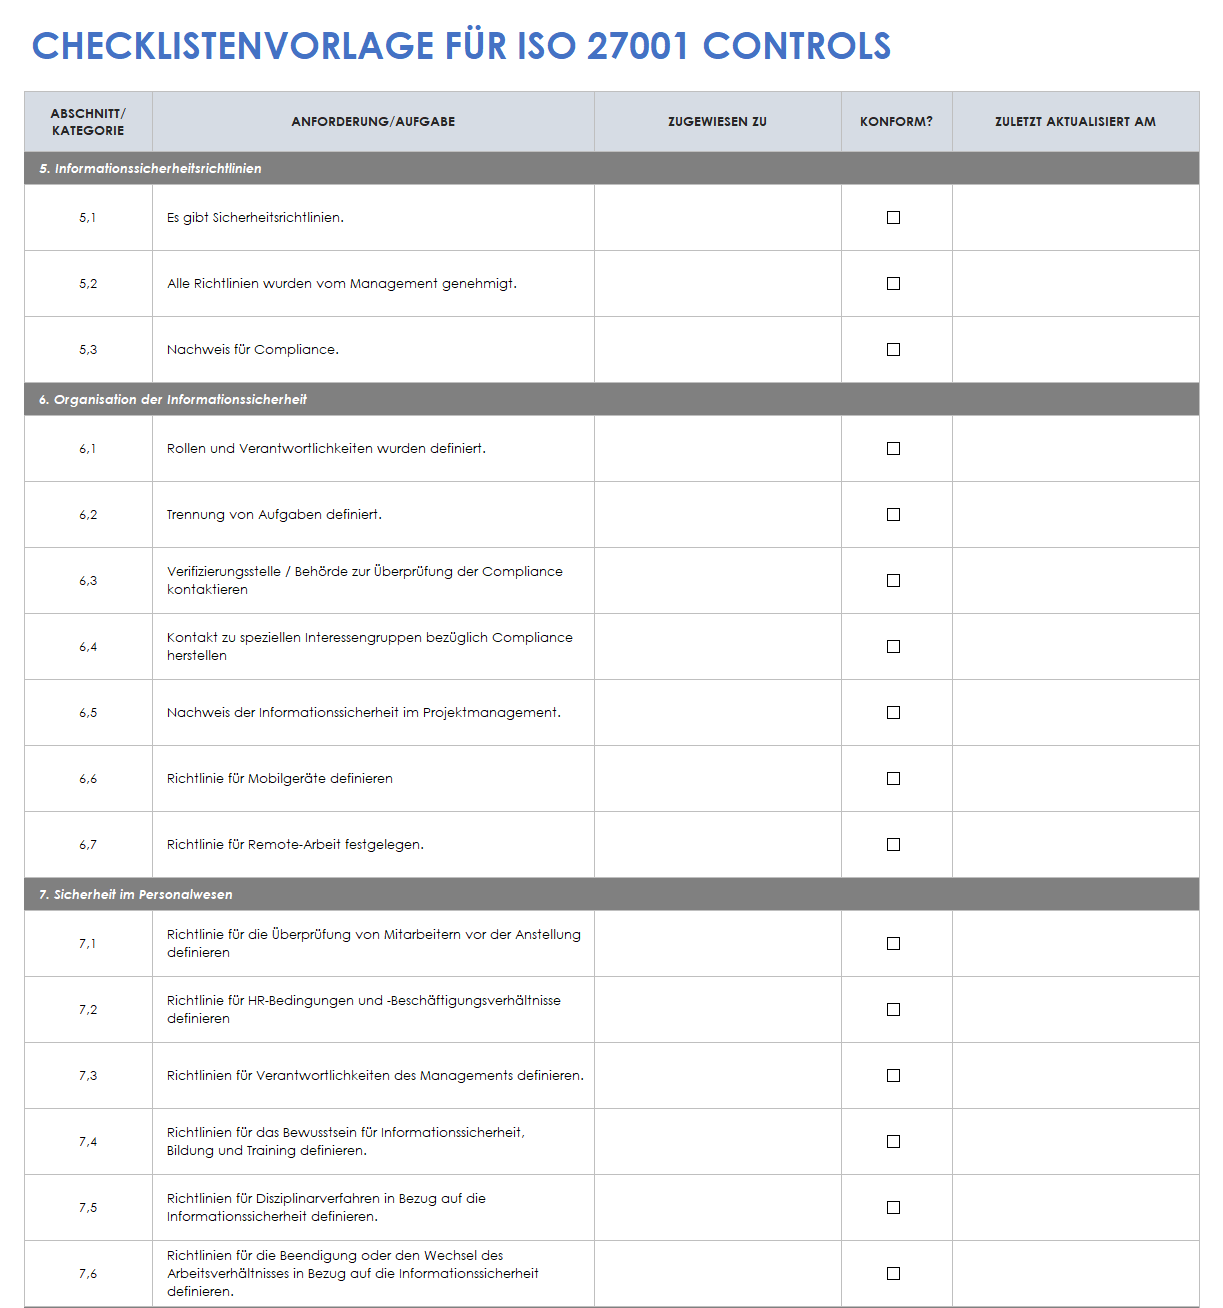  Checklistenvorlage für ISO-27001-Kontrollen